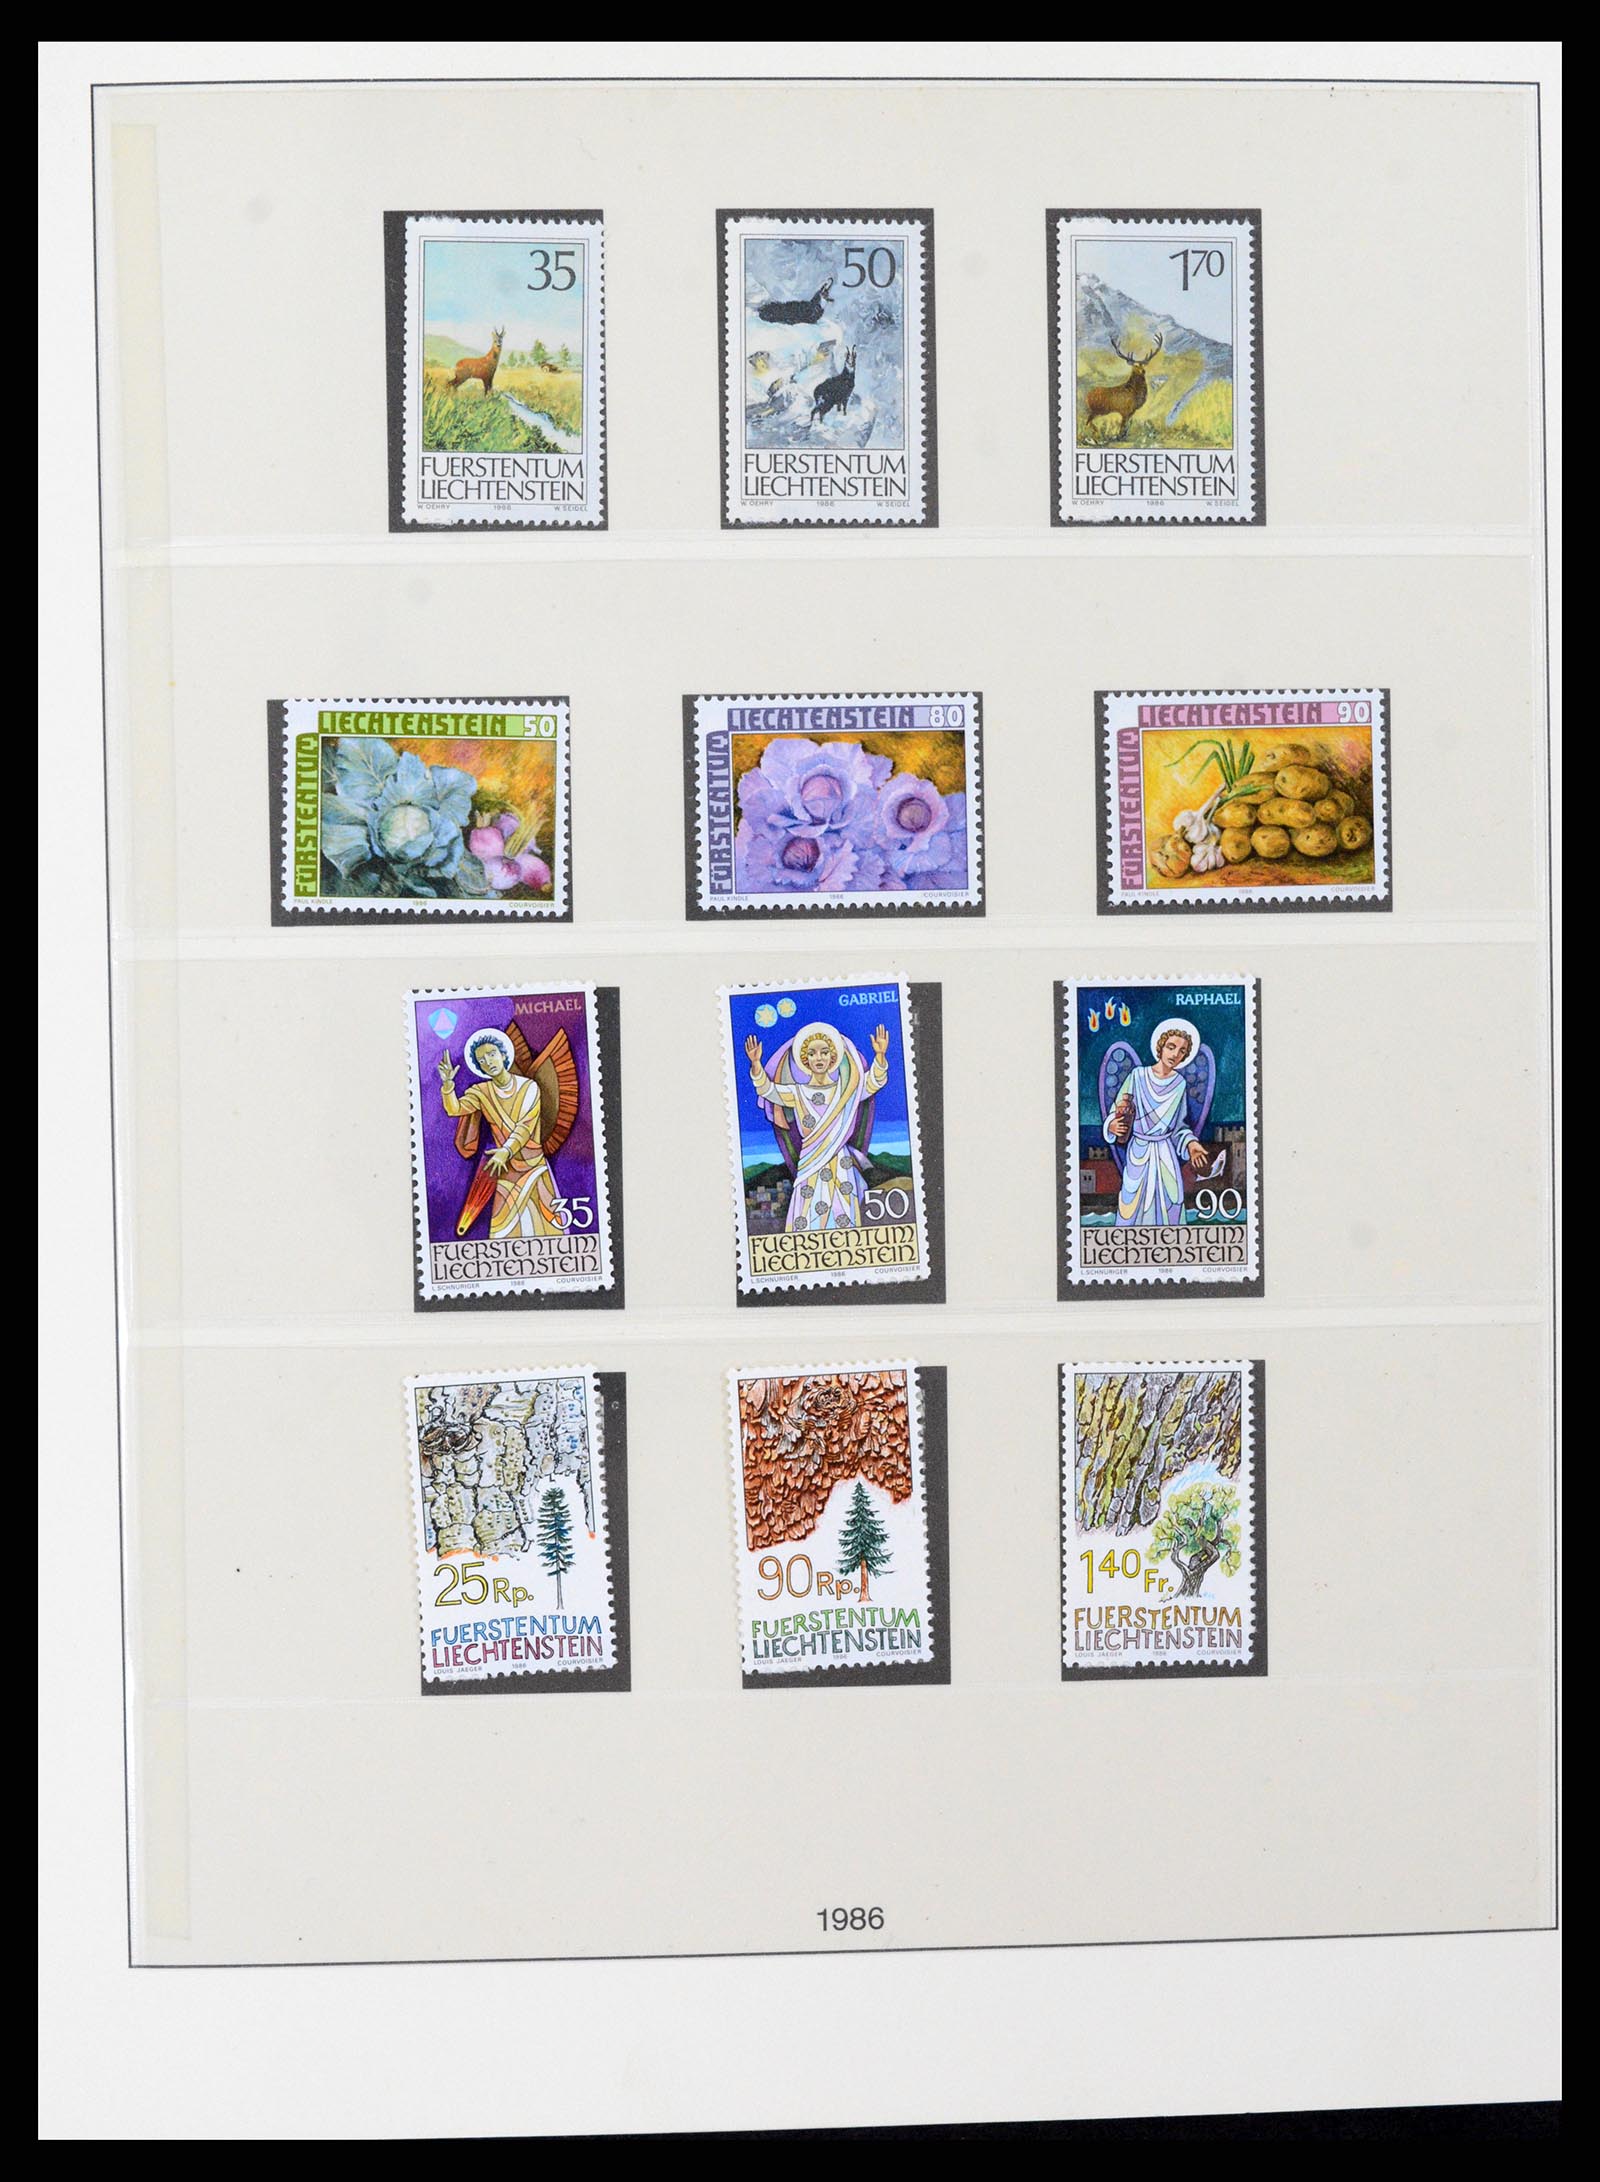 37295 090 - Stamp collection 37295 Liechtenstein 1912-2009.